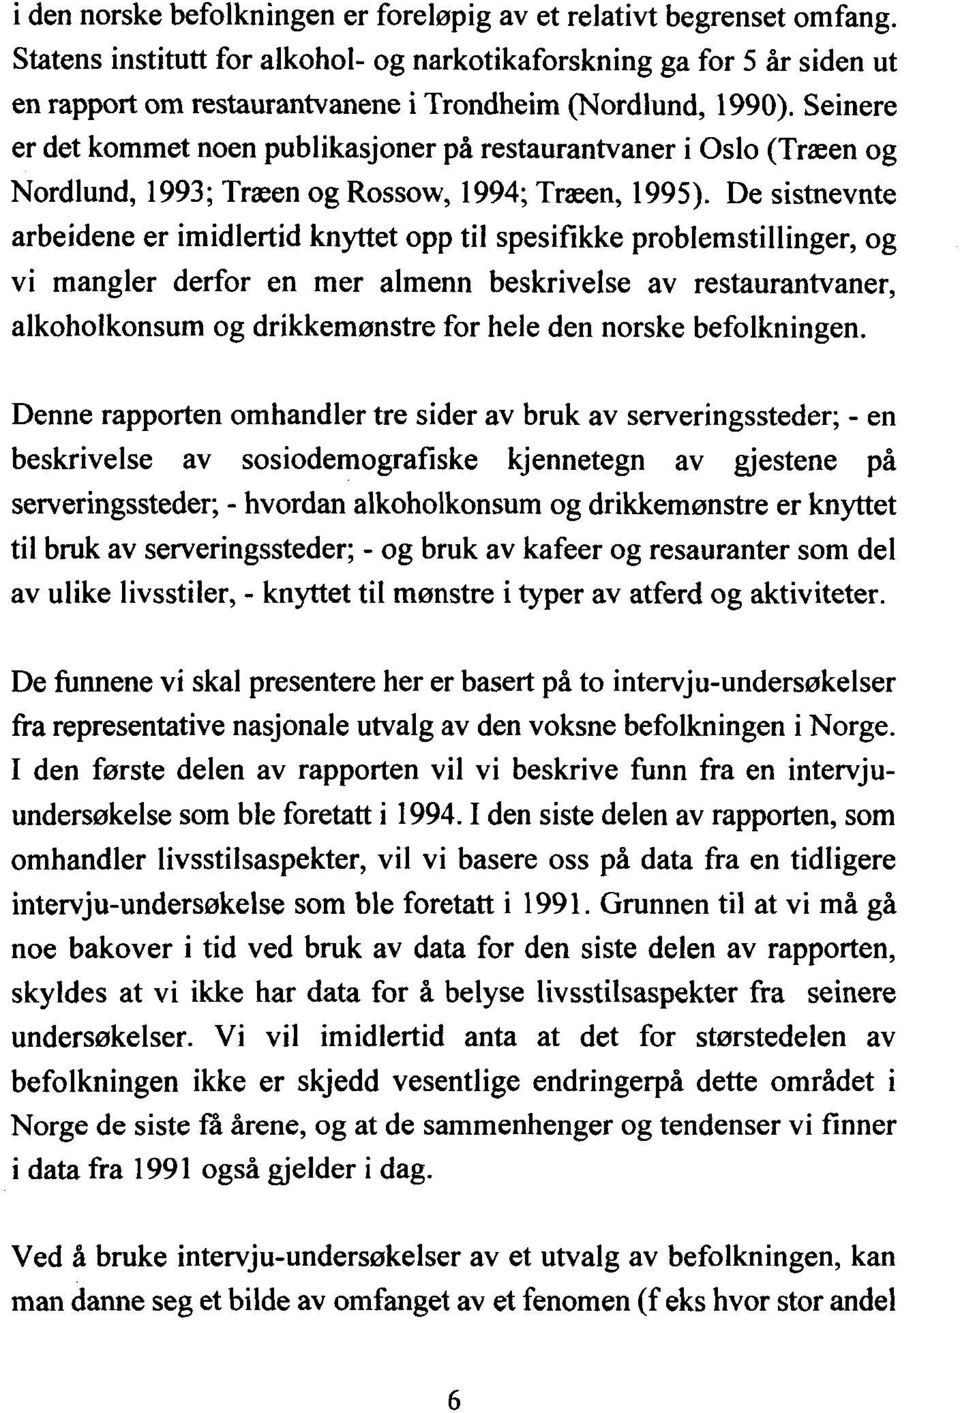 Seinere er det kommet noen publikasjoner på restaurantvaner i Oslo (Træen og Nordlund, 1993; Træen og Rossow, 1994; Træen, 1995).